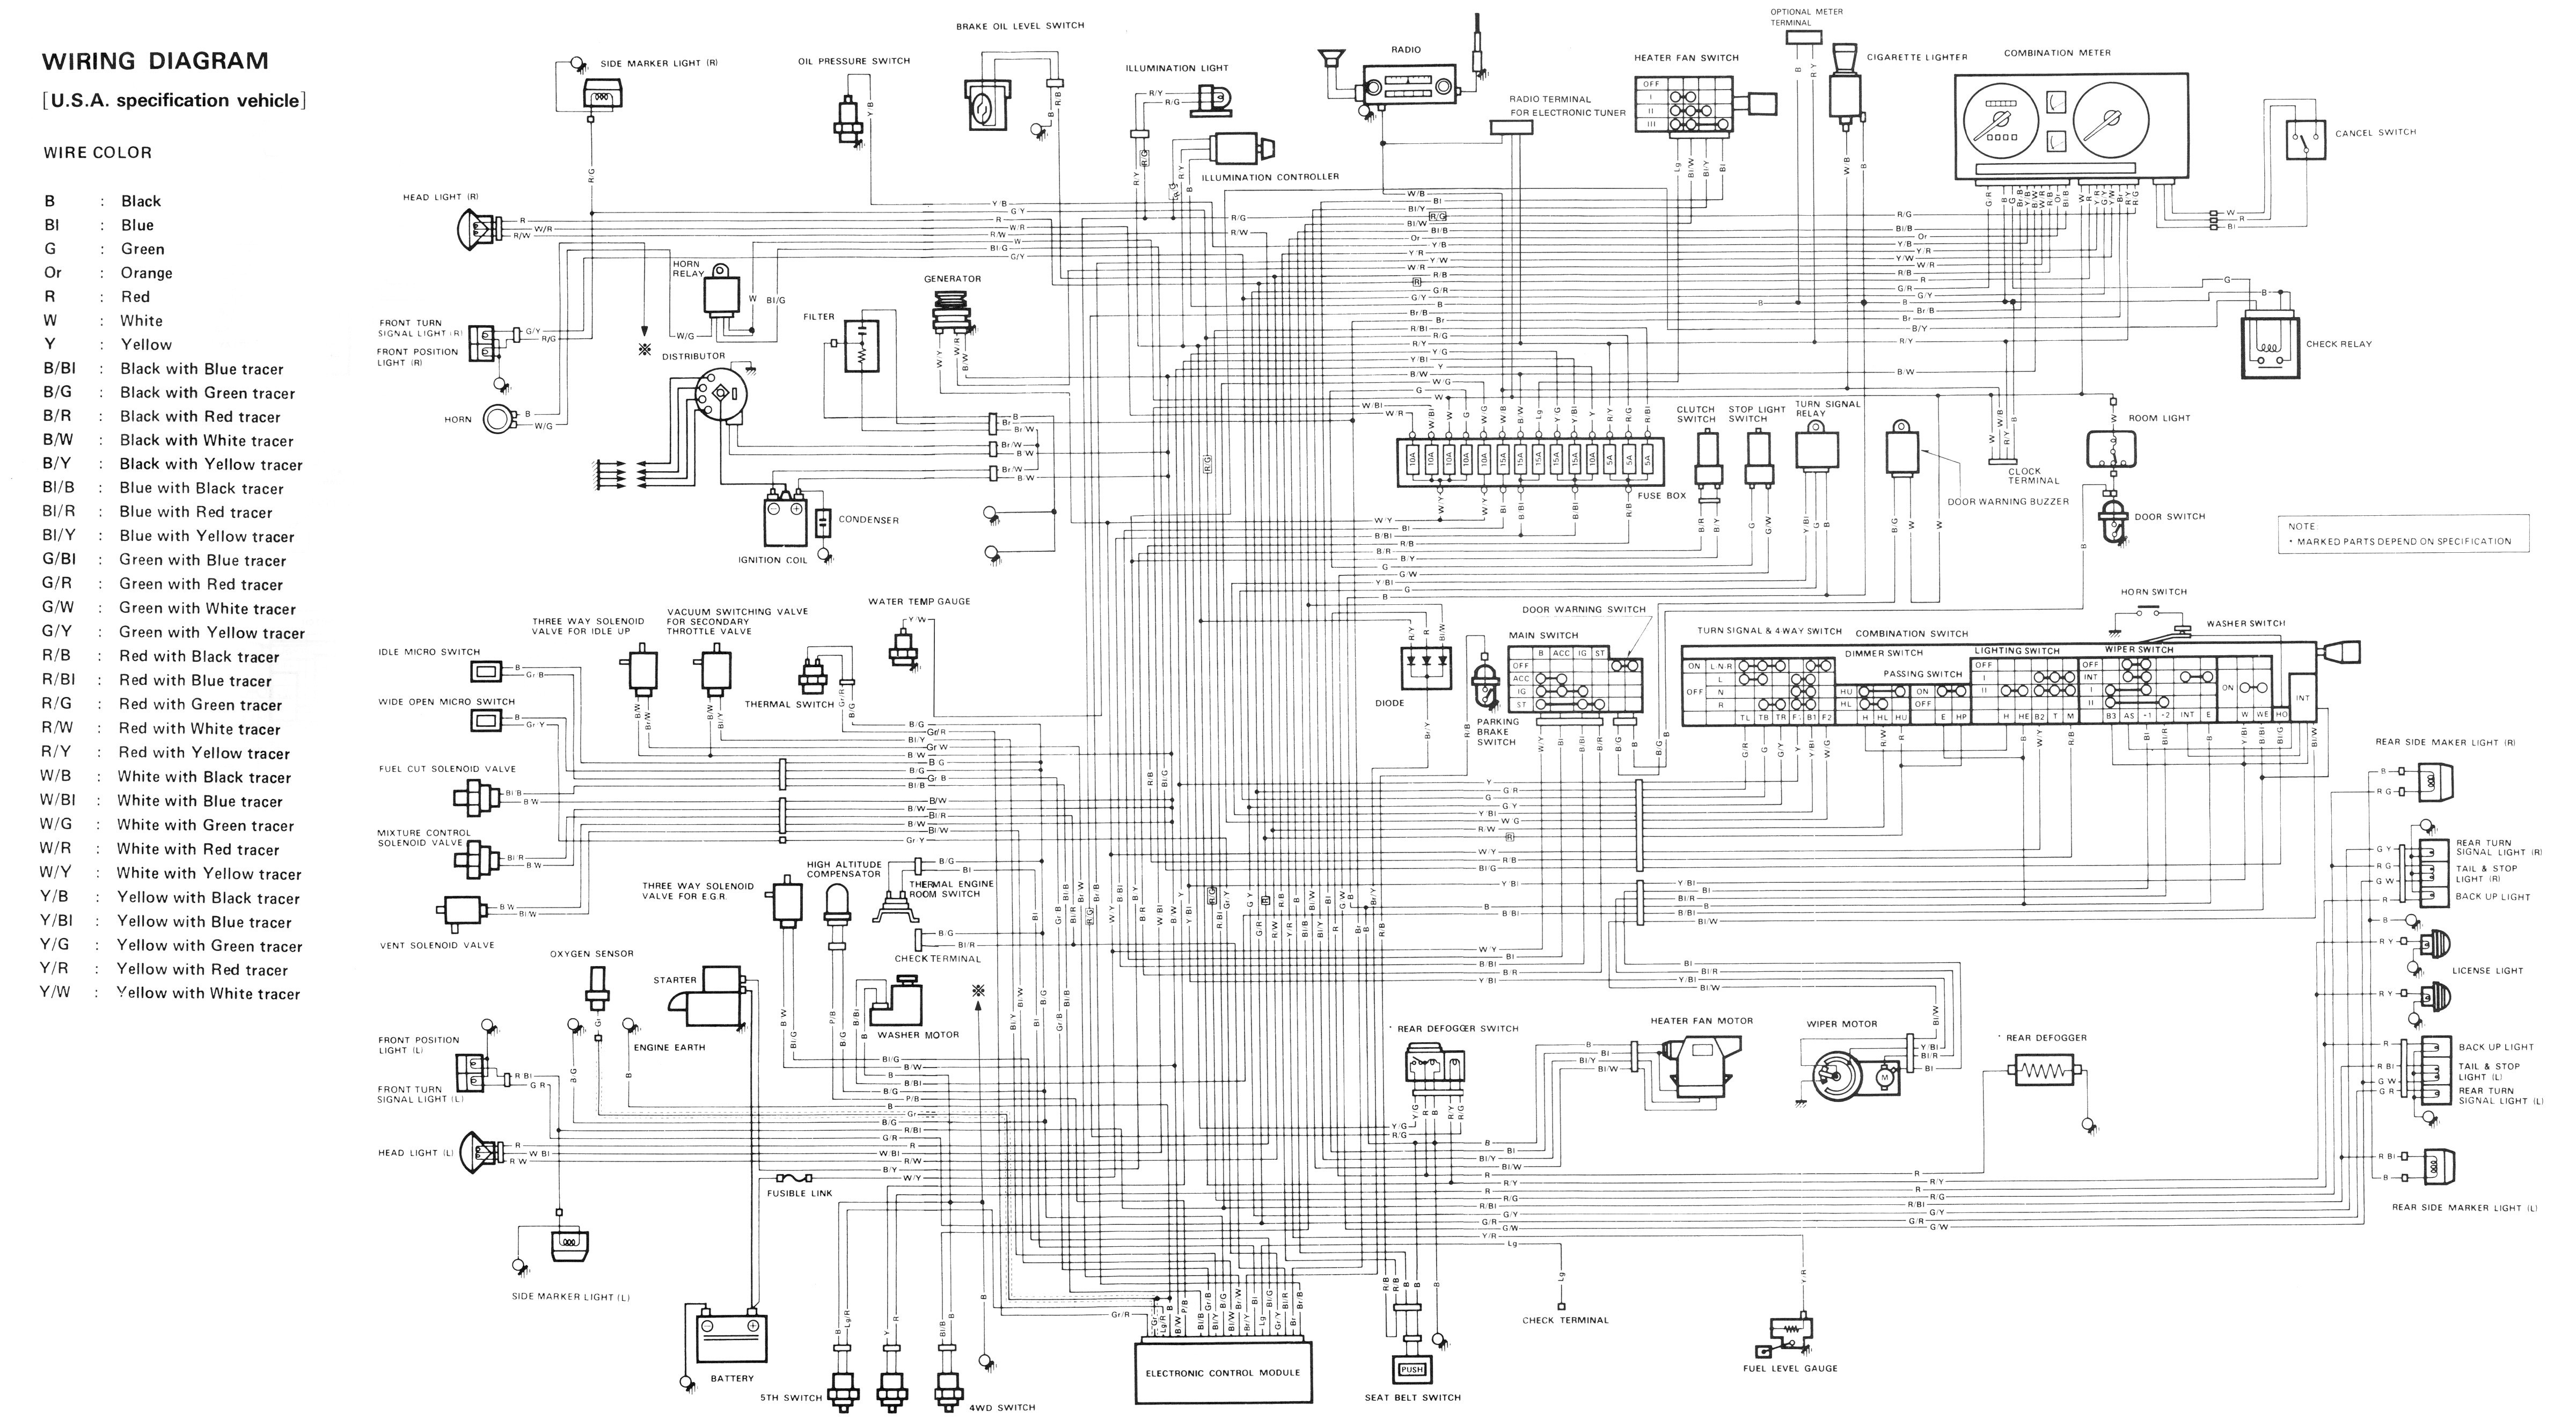 suzuki samurai wiring diagram lzk gallery wire center u2022 rh abetter pw